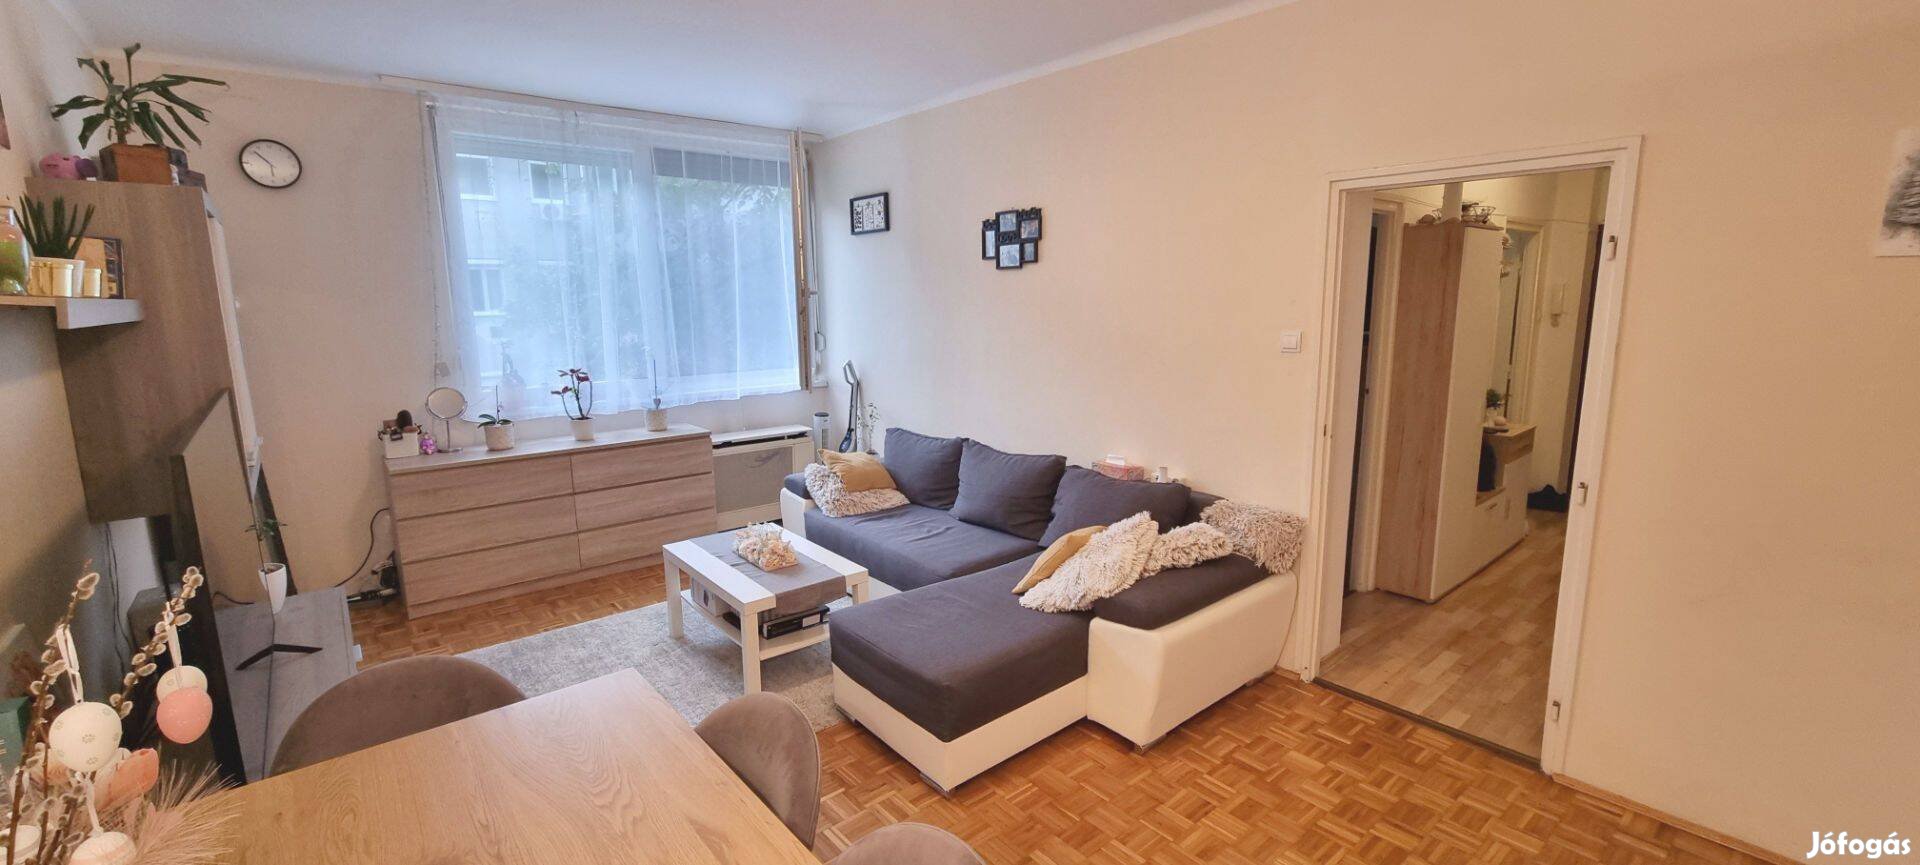 Felújított 43 m2-es lakás eladó a Bulgárföldön a Fazola Henrik utcában